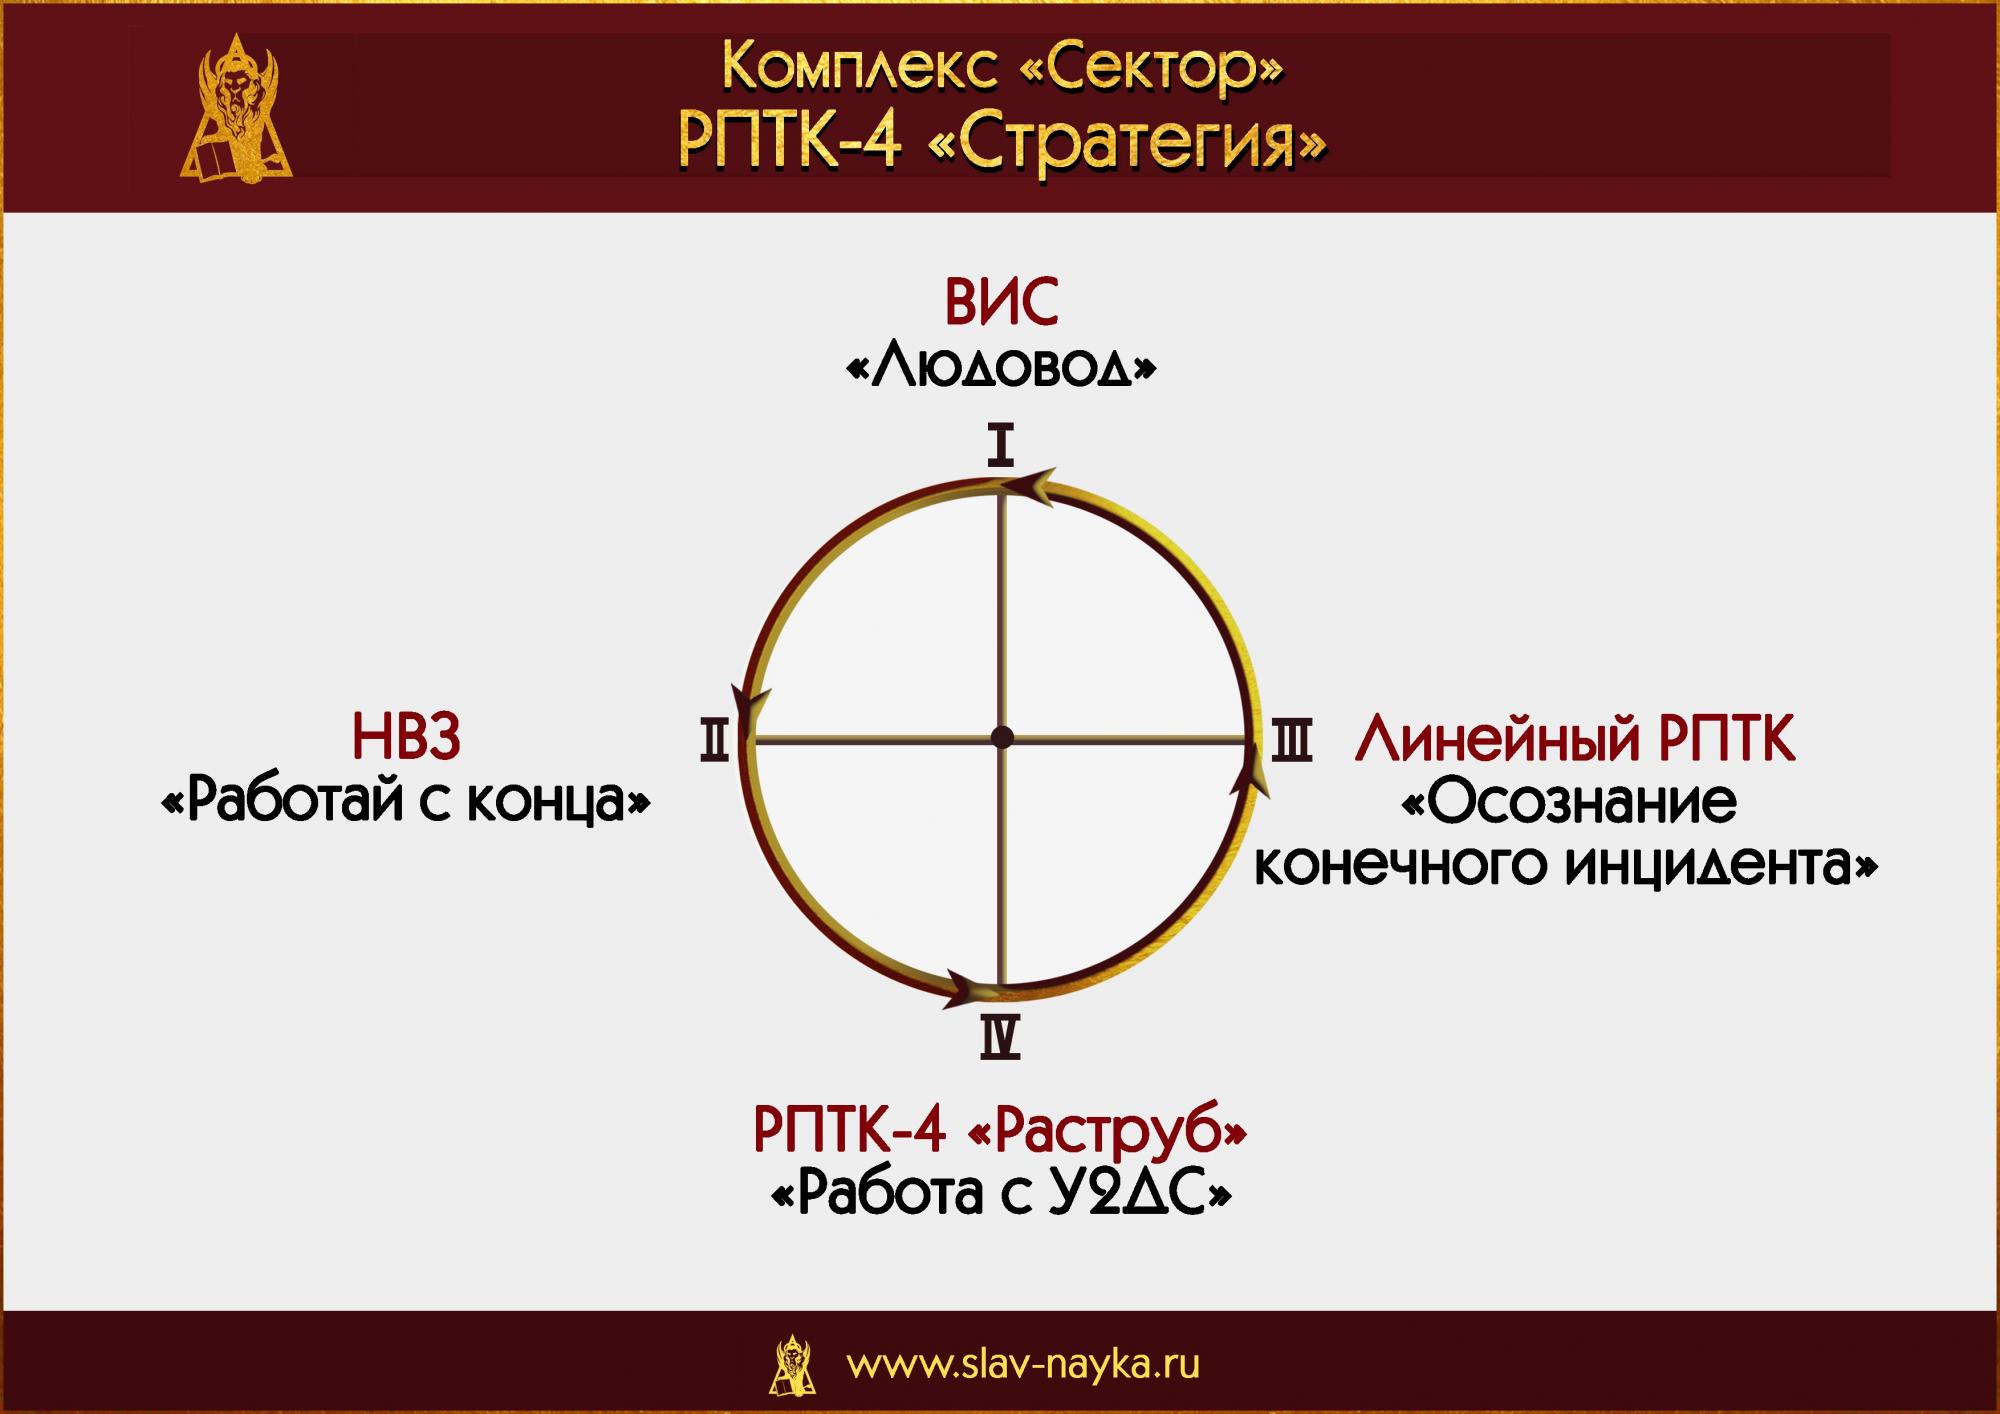 Комплекс "Сектор" РПТК-4 "Стратегия". прикладная наука